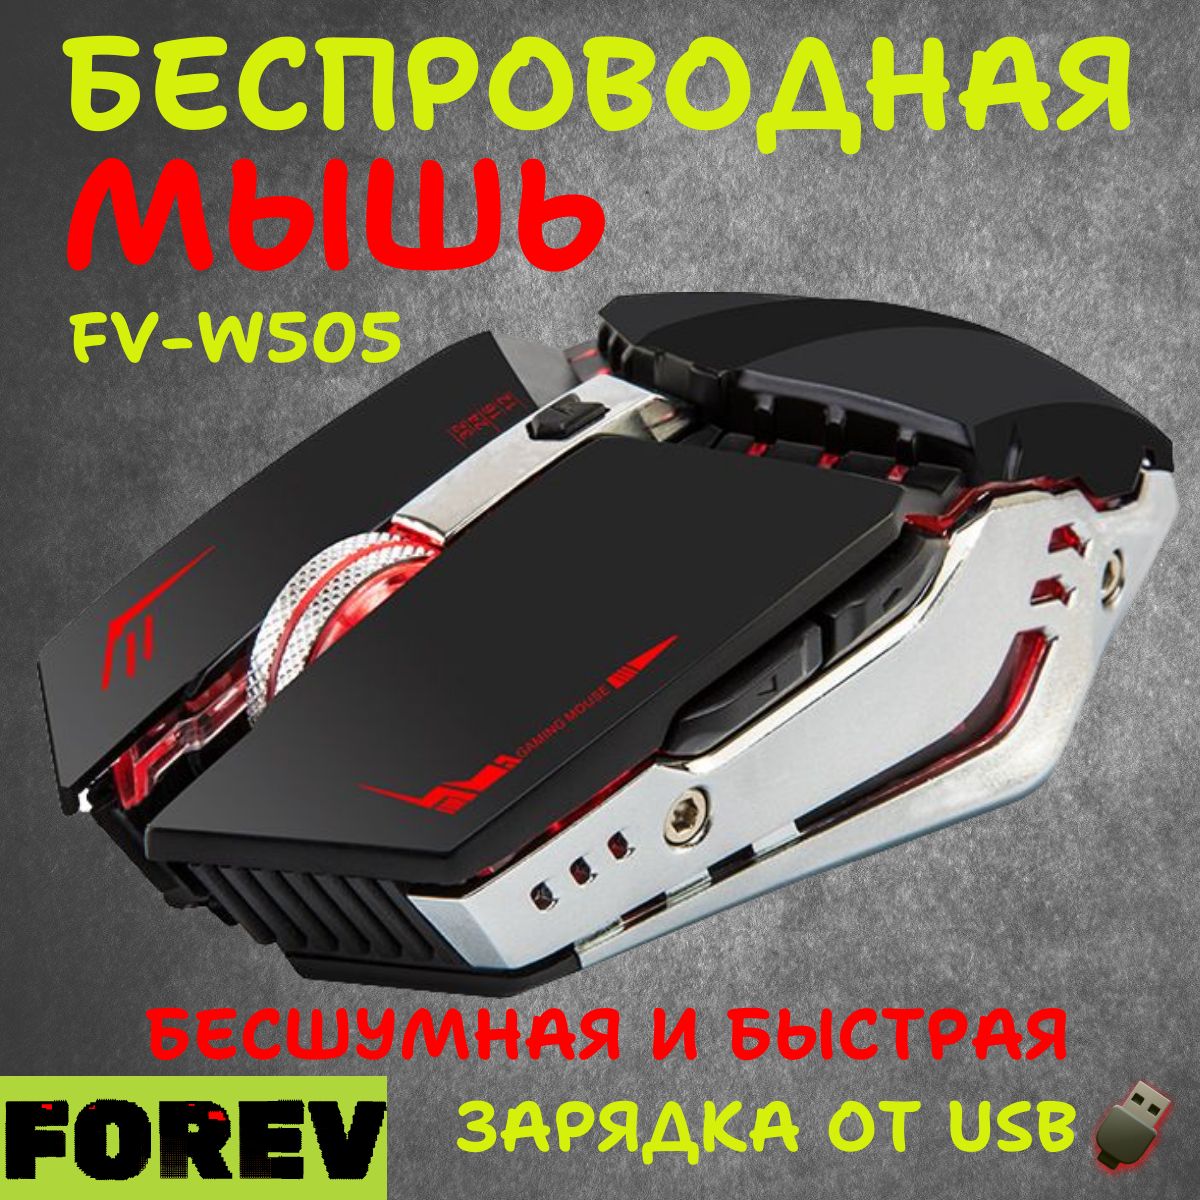 ИгроваямышьбеспроводнаяForevFV-W505,черный,серыйметаллик